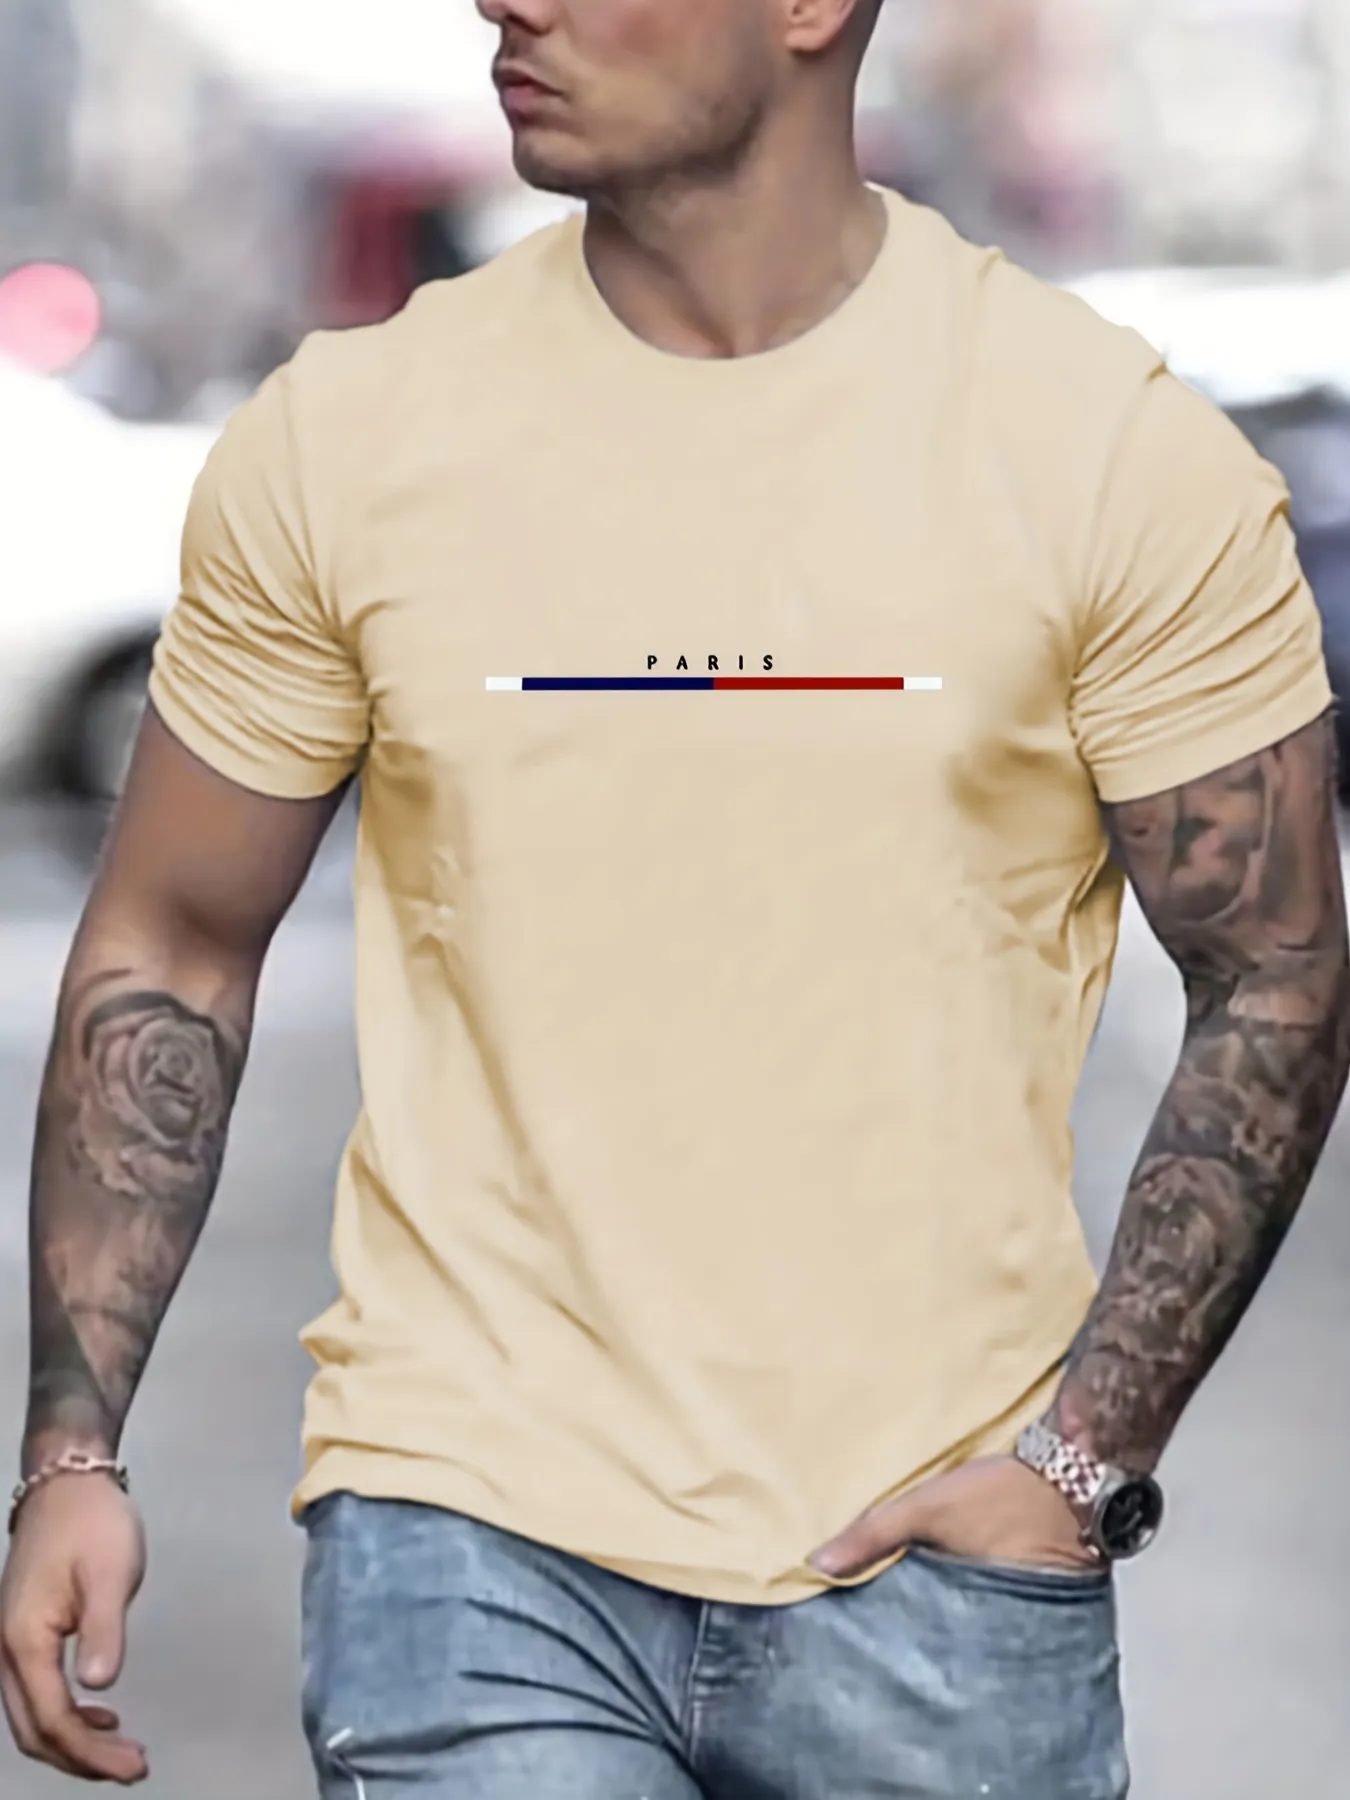 S04335c8951a34d80b6f1f5ecaddbd8dfB Men's 100 Cotton Paris Short Sleeve T-shirt Top Loose Tshirt